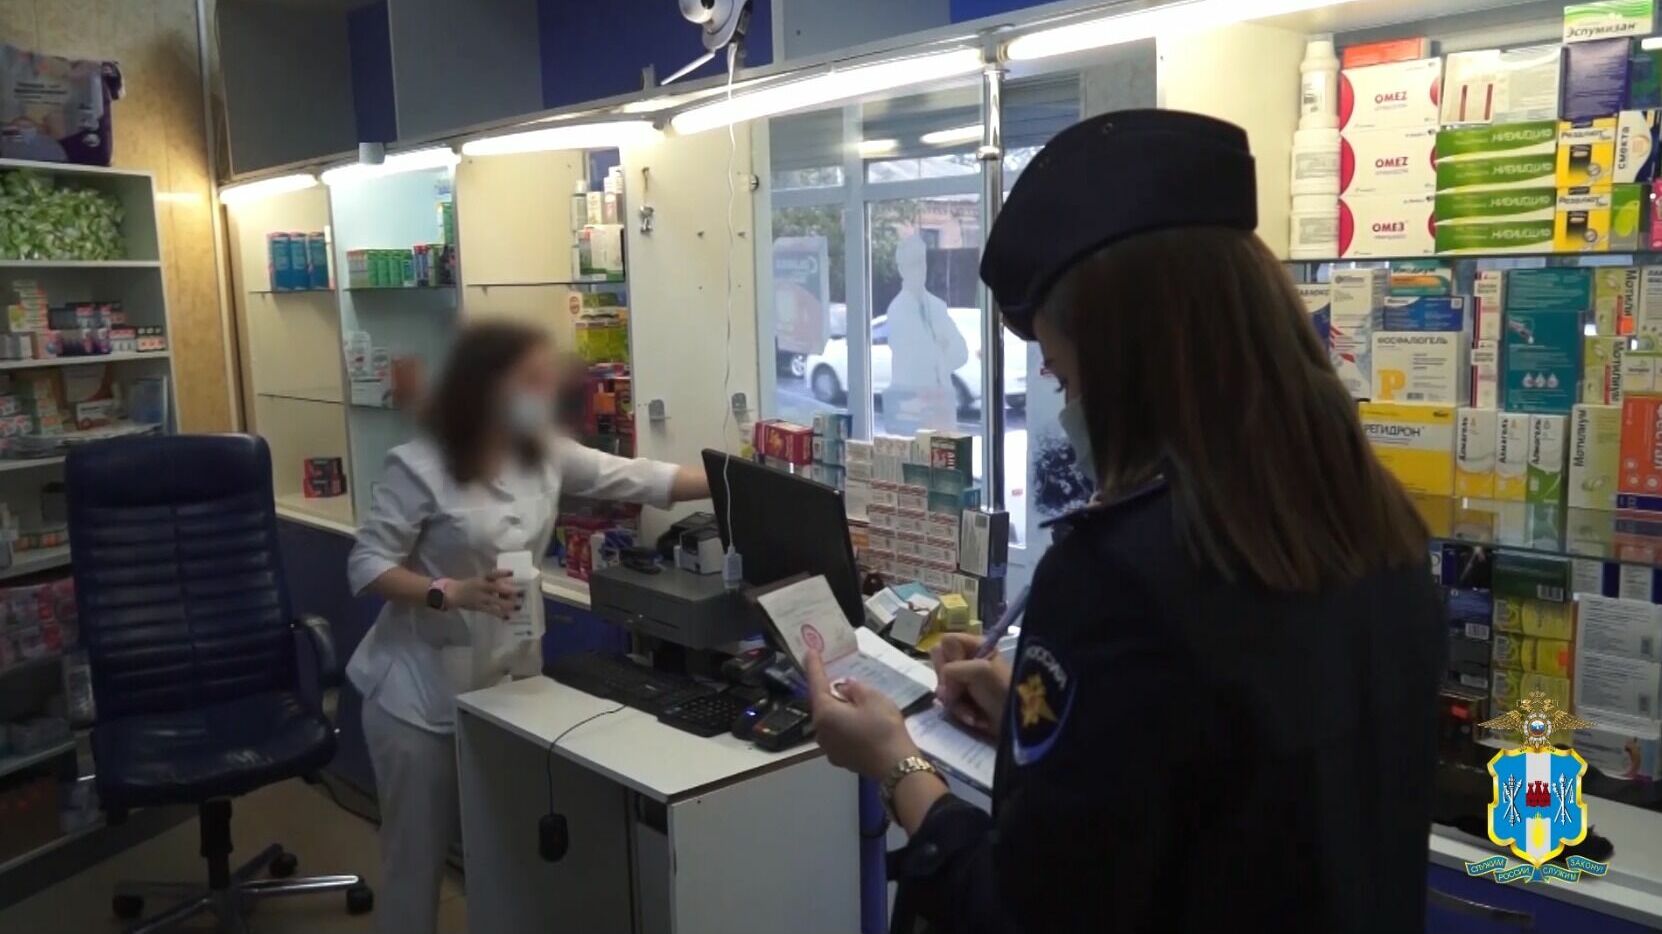 В Ростове у 47-летней женщины нашли аптечные наркотики на 5 млн рублей